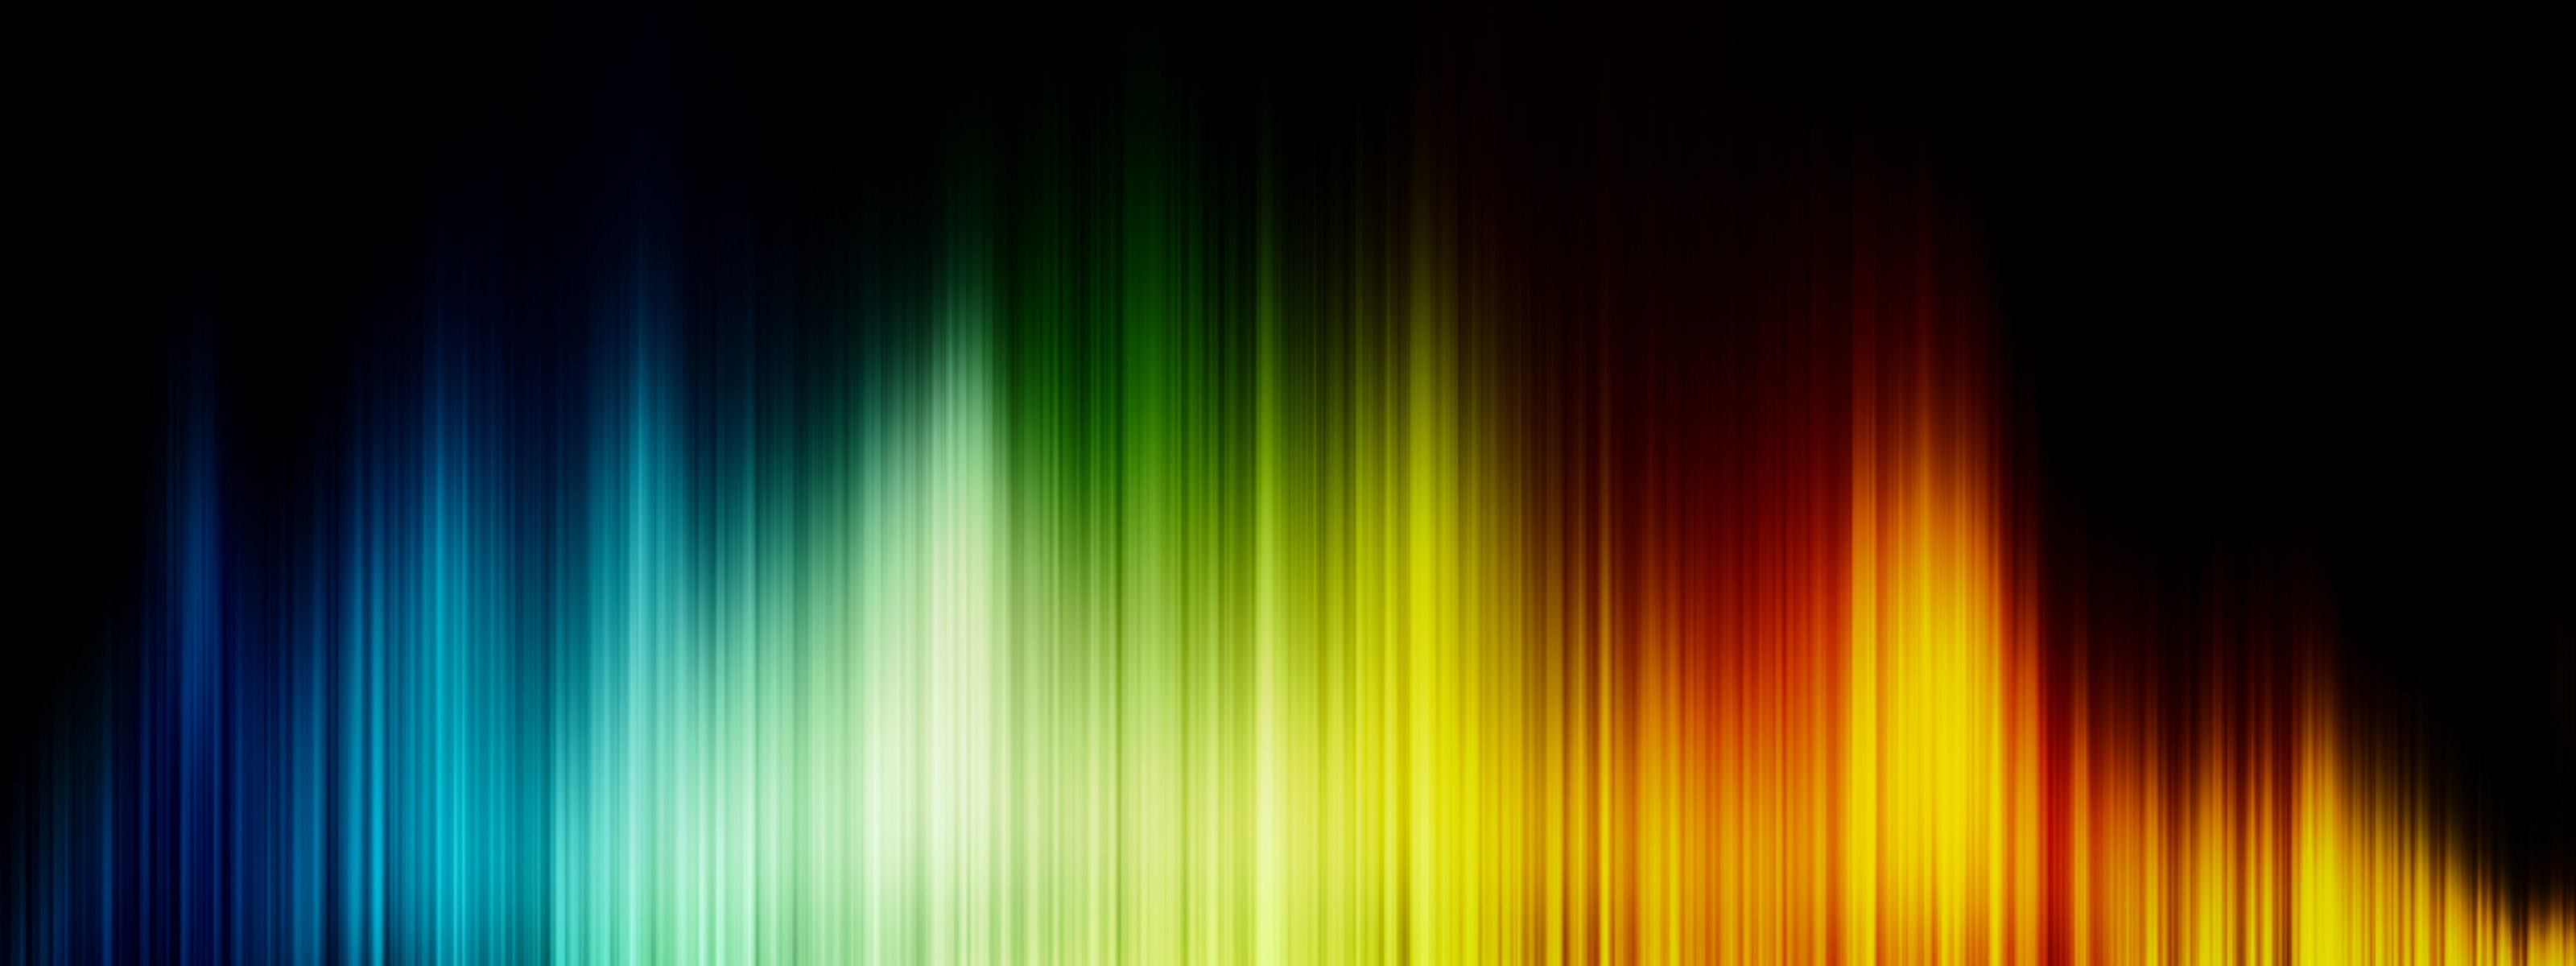 3200x1200 Colors Wallpaper - QyGjxZ Images of Neon Equalizer Wallpaper - #SC ...